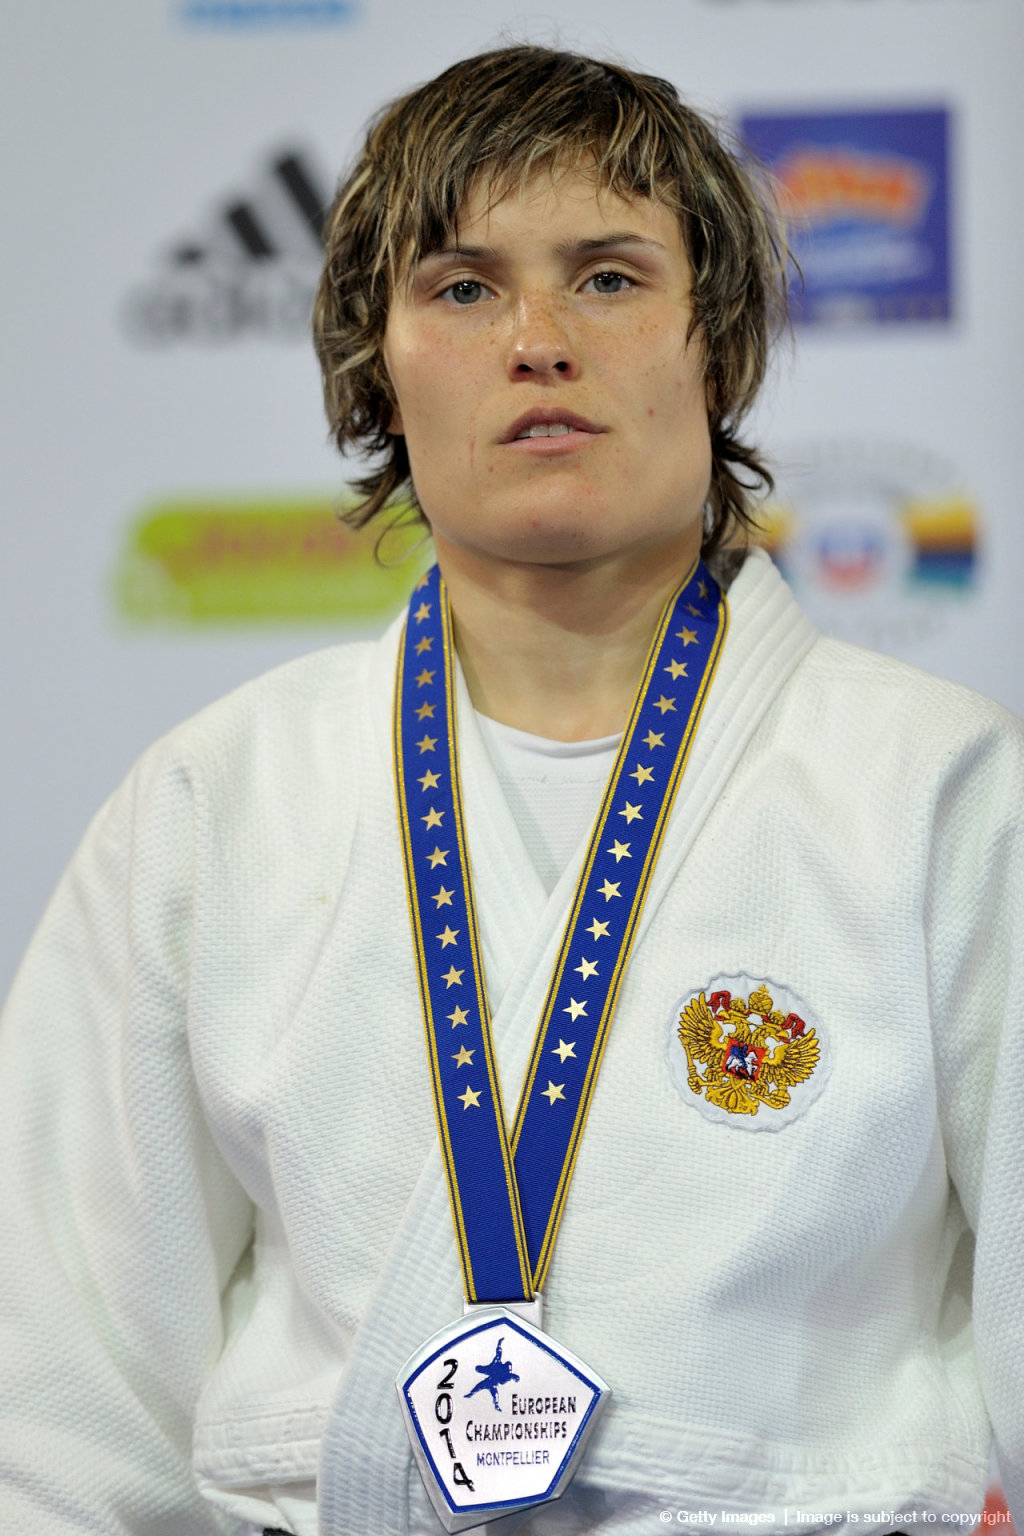 Дзюдо в России (judo): 2014 Montpellier European Judo Championships — 24 to 27 April